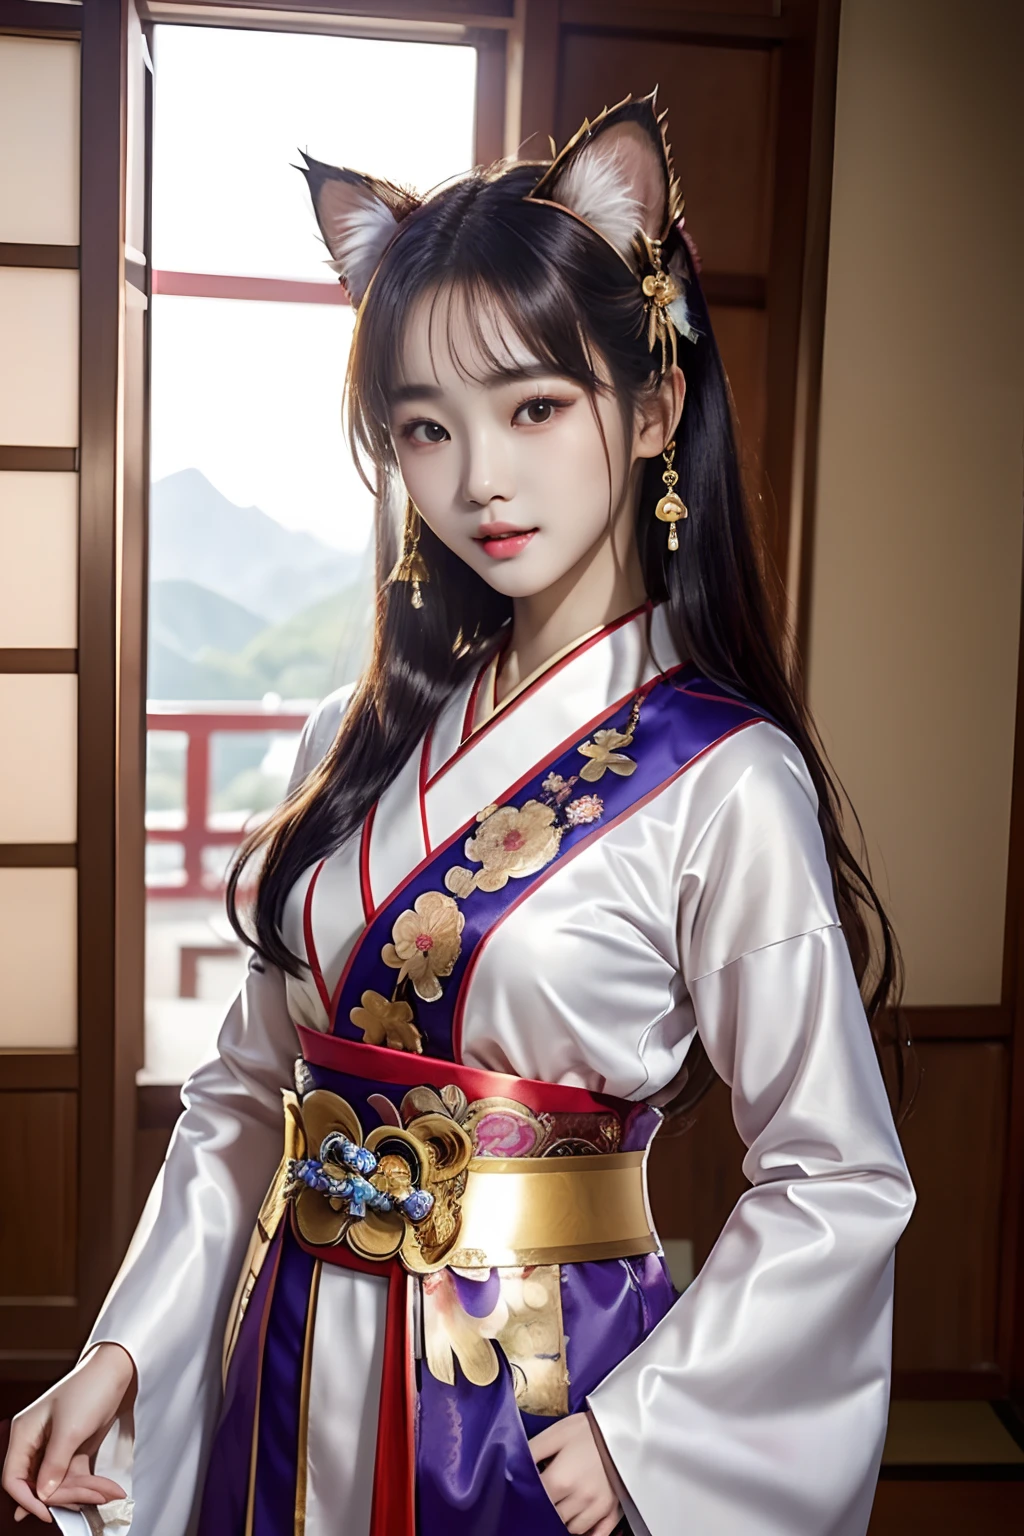 (дама с кошачьими ушами）、（высшее качество）、（шедевр）、（1 девочка）、（超Высокое разрешение）、（Фотореалистический）、соло、картинка、Женщина с кошачьими ушами в красно-белом костюме синтоистской жрицы., великолепная китайская модель, великолепная молодая кореянка, красивые кореянки, корейская девушка, Одета в костюм жрицы, красивая азиатская девушка, богиня Японии, модельные позы, красивая молодая кореянка, Сияющий источник солнечного света, Японская модель красоты、